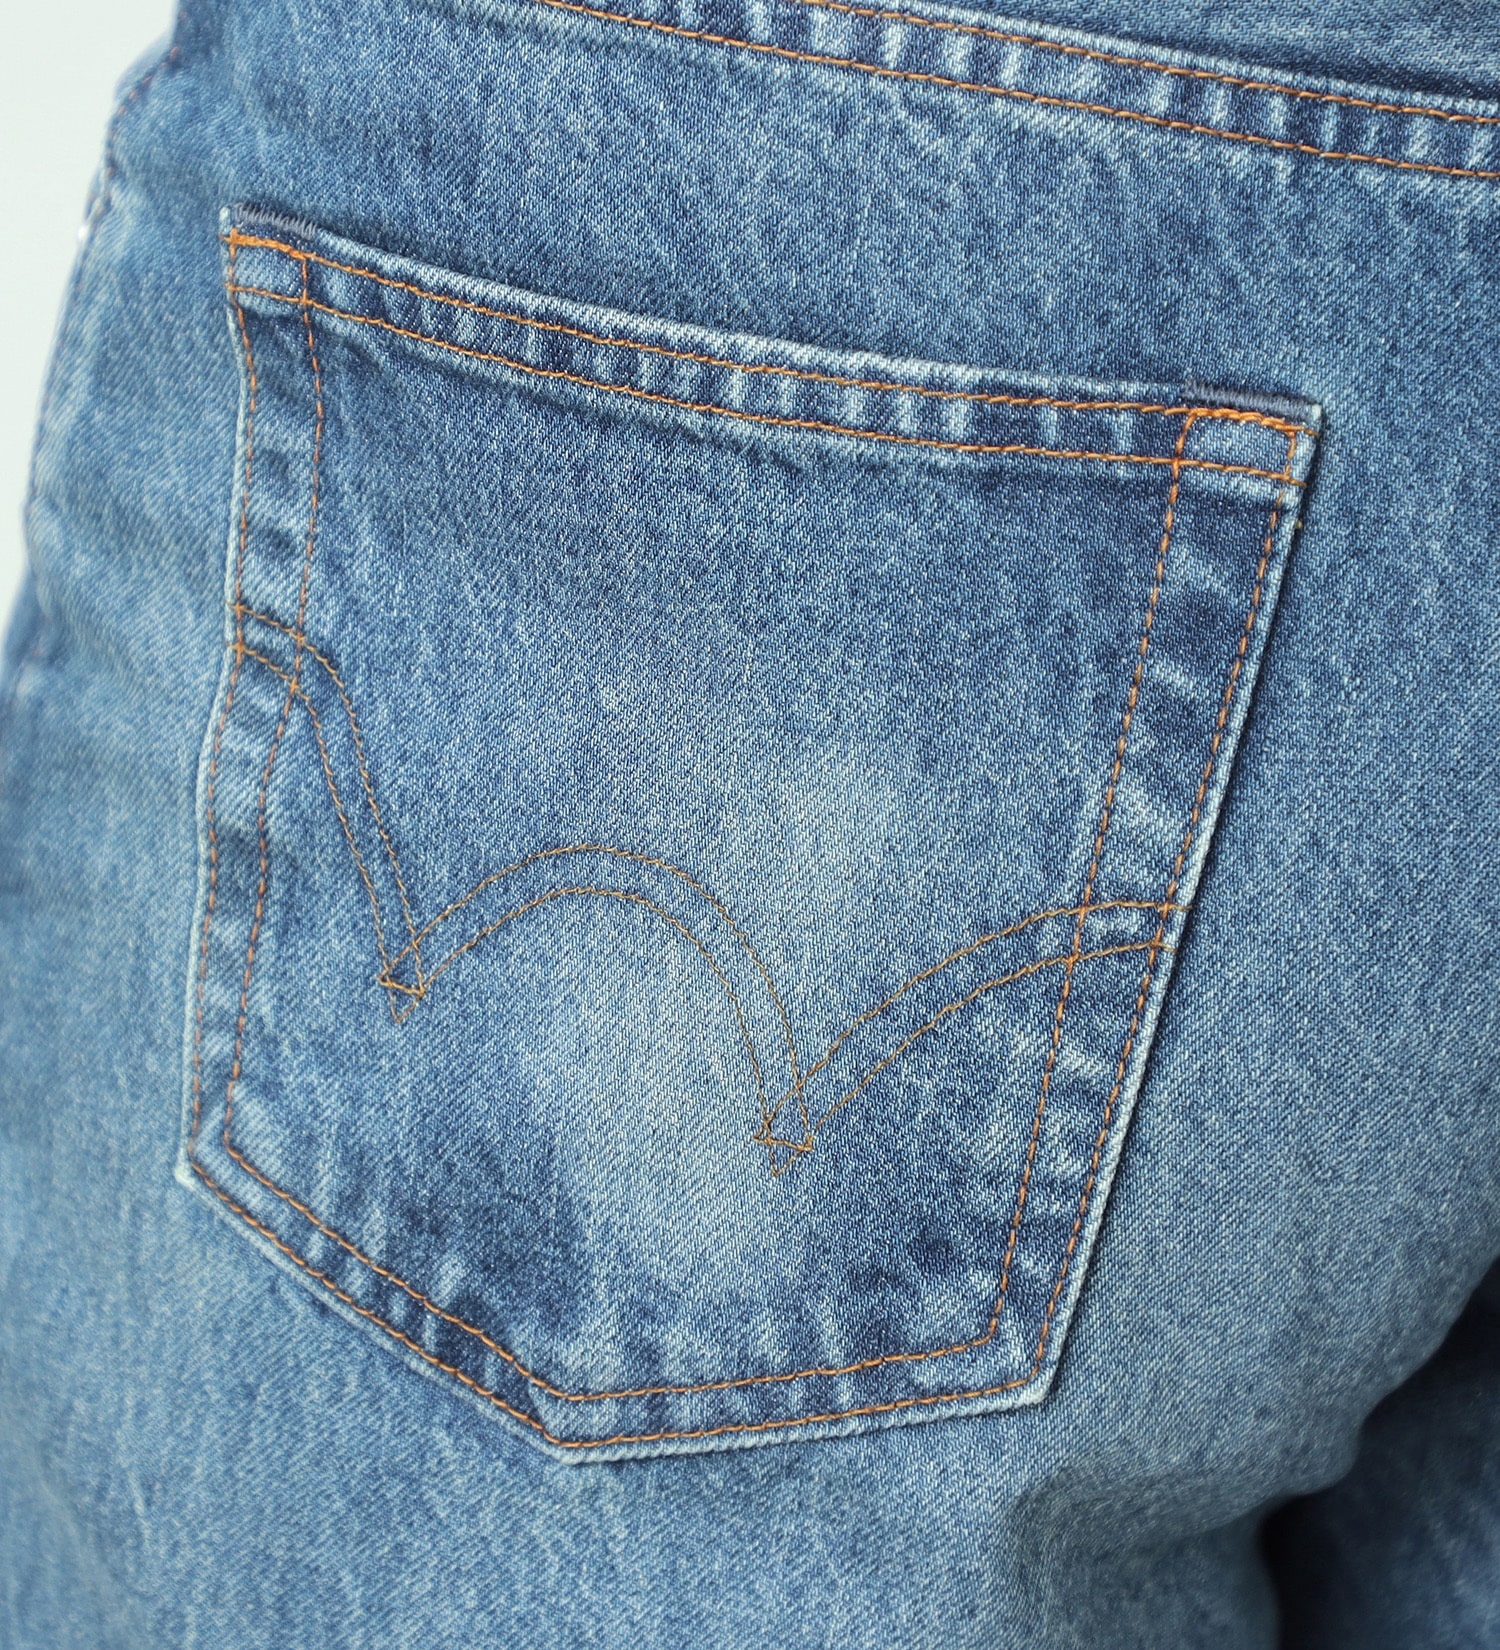 EDWIN(エドウイン)の503 ルーズストレートパンツ LOOSE STRAIGHT MADE IN JAPAN 日本製 綿100%|パンツ/デニムパンツ/メンズ|中色ブルー